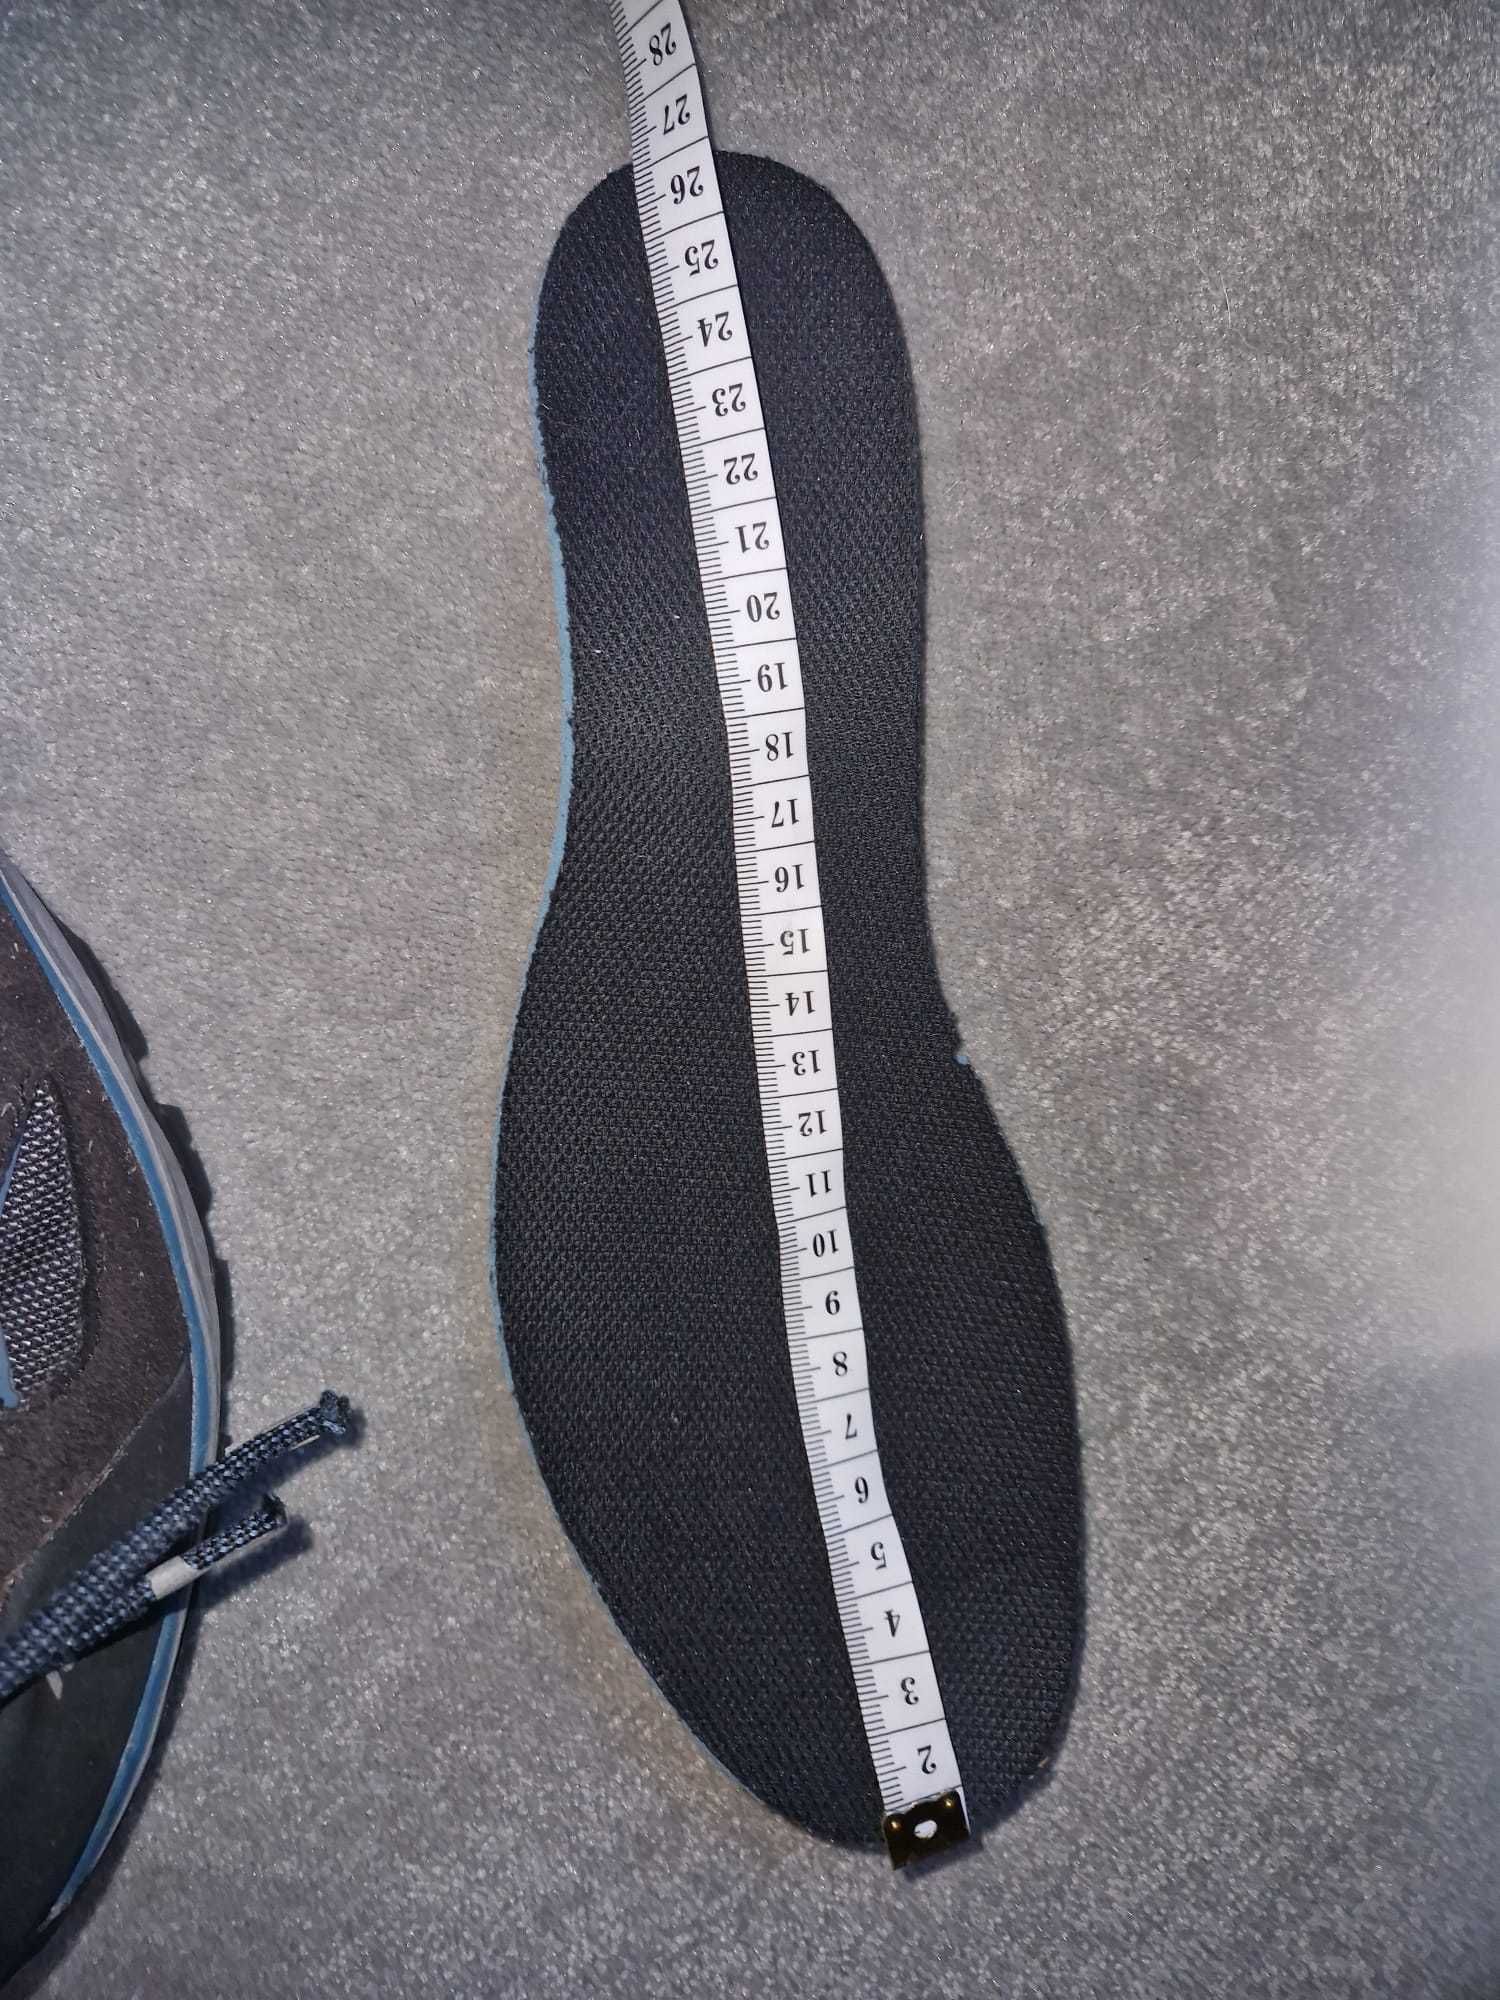 Buty turystyczne WTP - MH100 MID - rozmiar 40 - wodoodporne